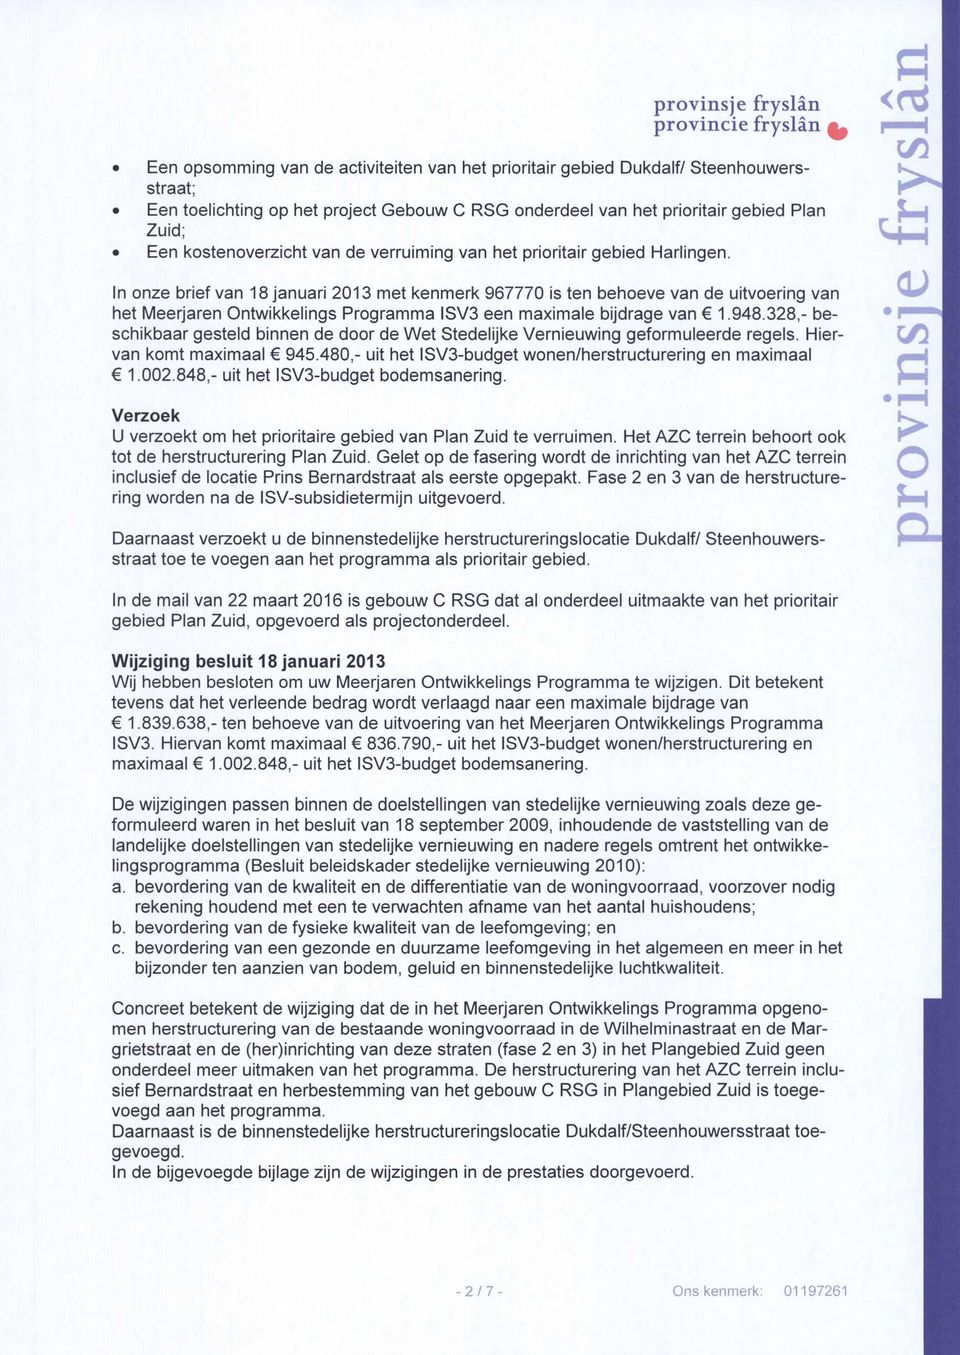 In onze brief van 18 januari 2013 met kenmerk 967770 is ten behoeve van de uitvoering van het Meerjaren ntwikkelings Programma ISV3 een maximale bijdrage van 1.948.